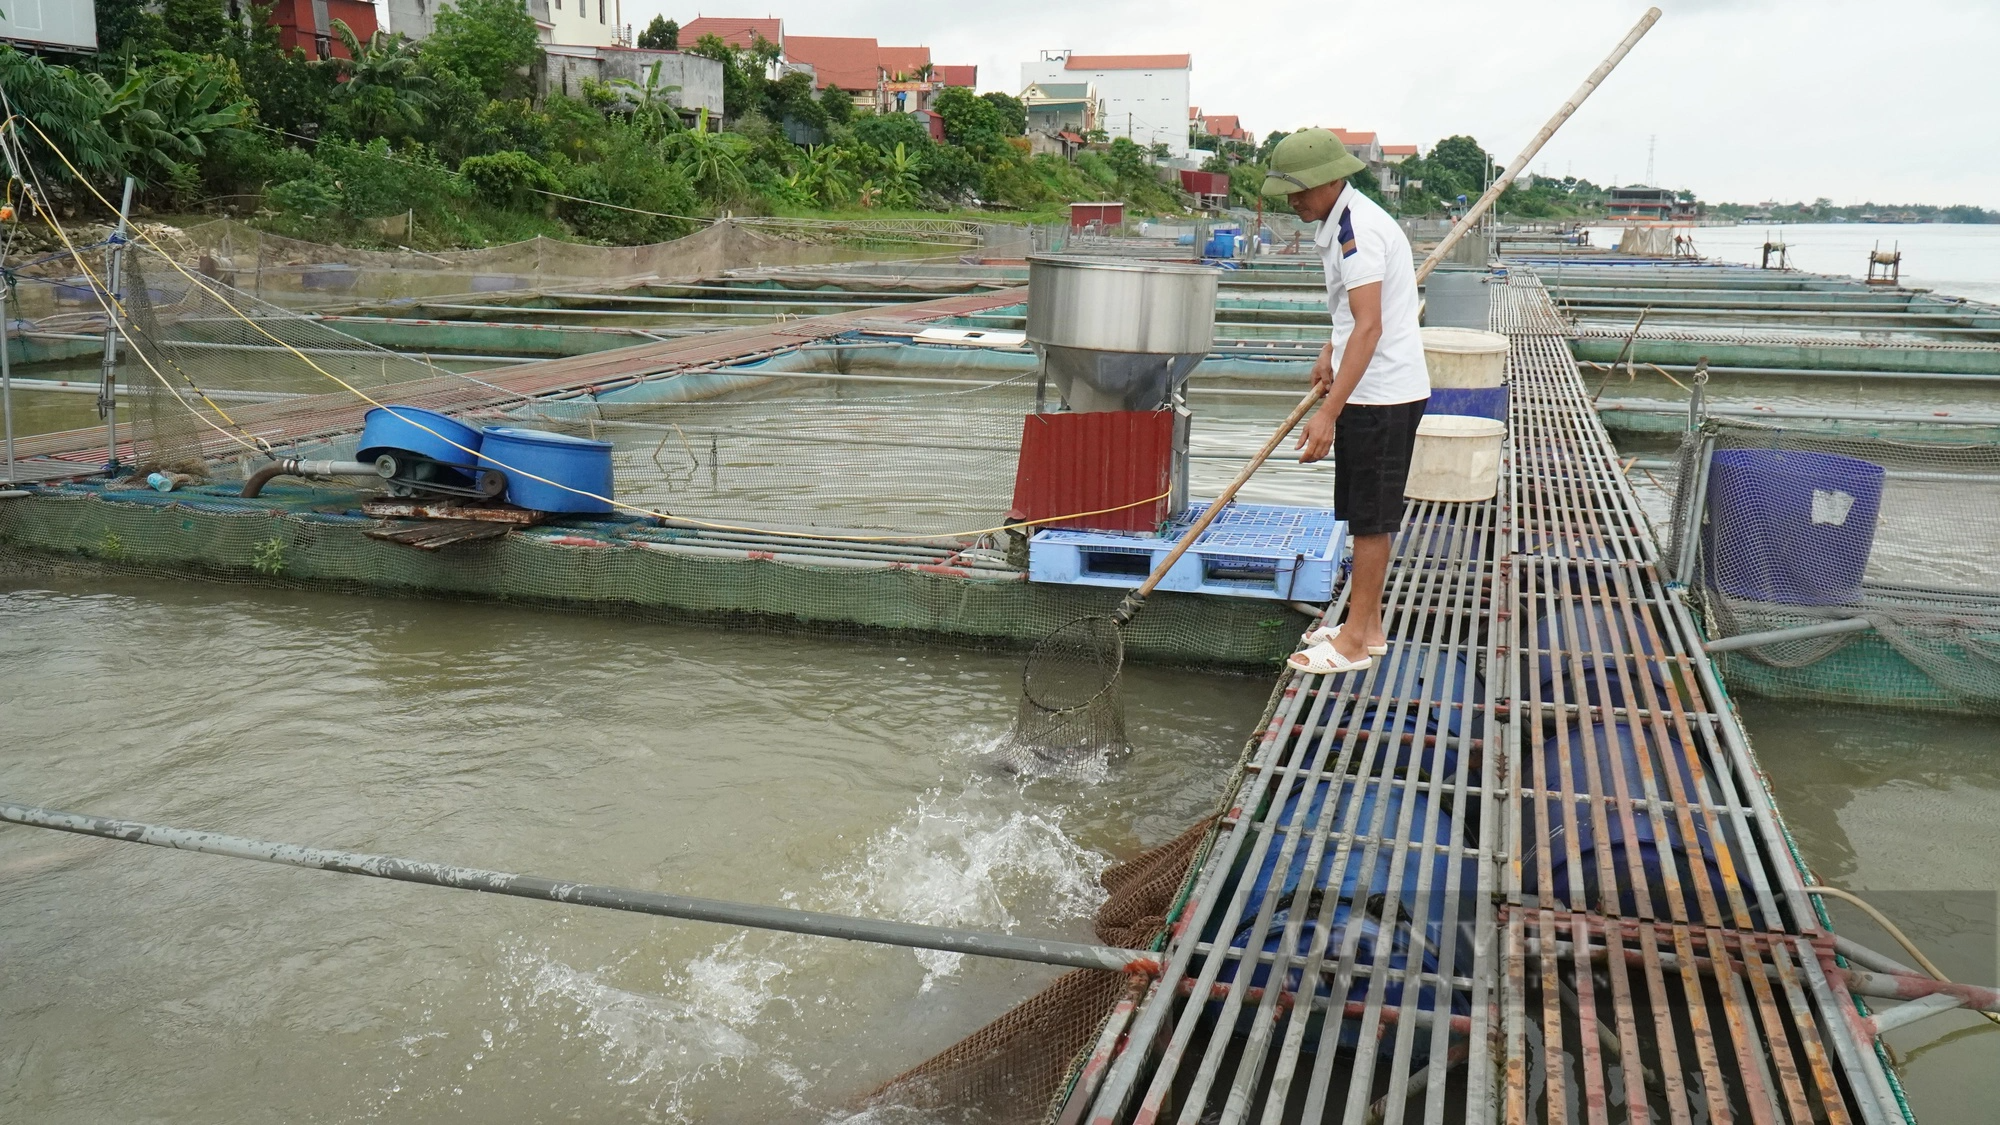 Nuôi cá lồng trên sông cho thu nhập cao, Bắc Ninh hướng vào nuôi cá đặc sản - Ảnh 1.